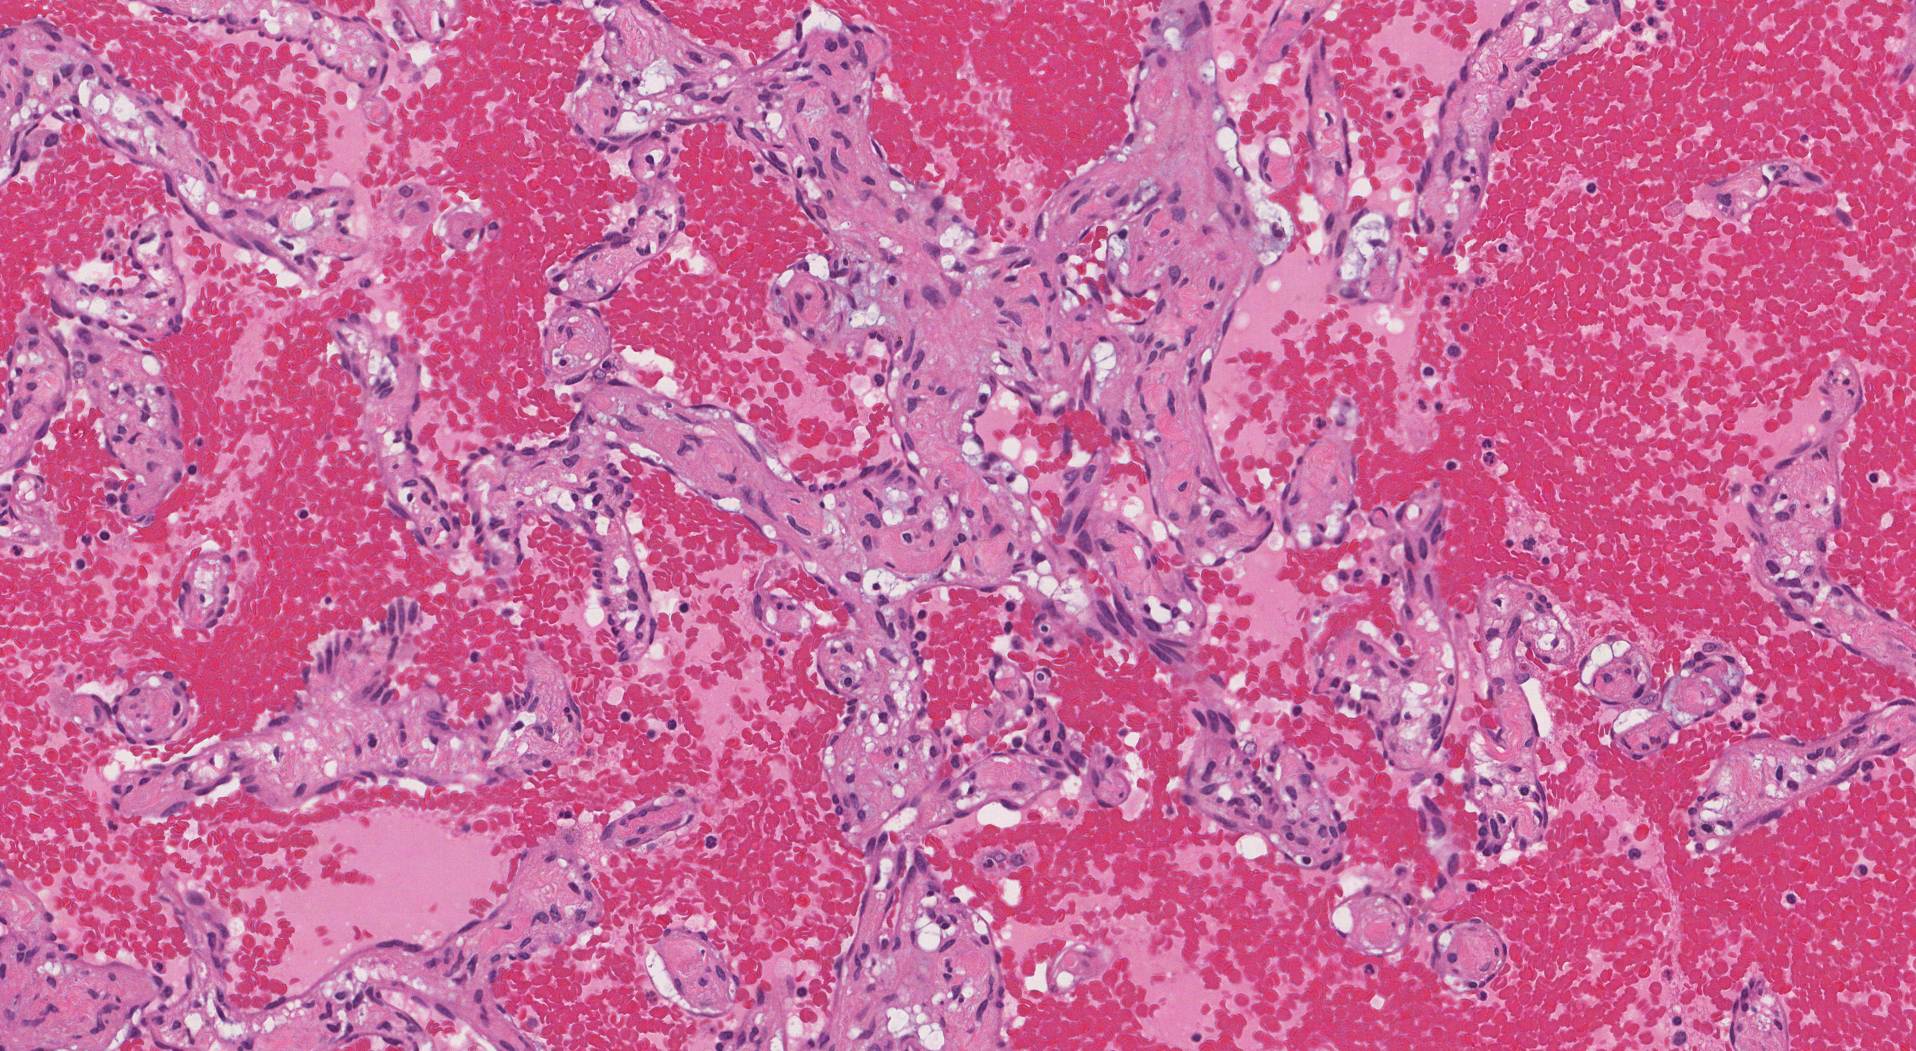 Dette bildet viser en type vaskulær lesjon i leveren kalt et hemangiom.